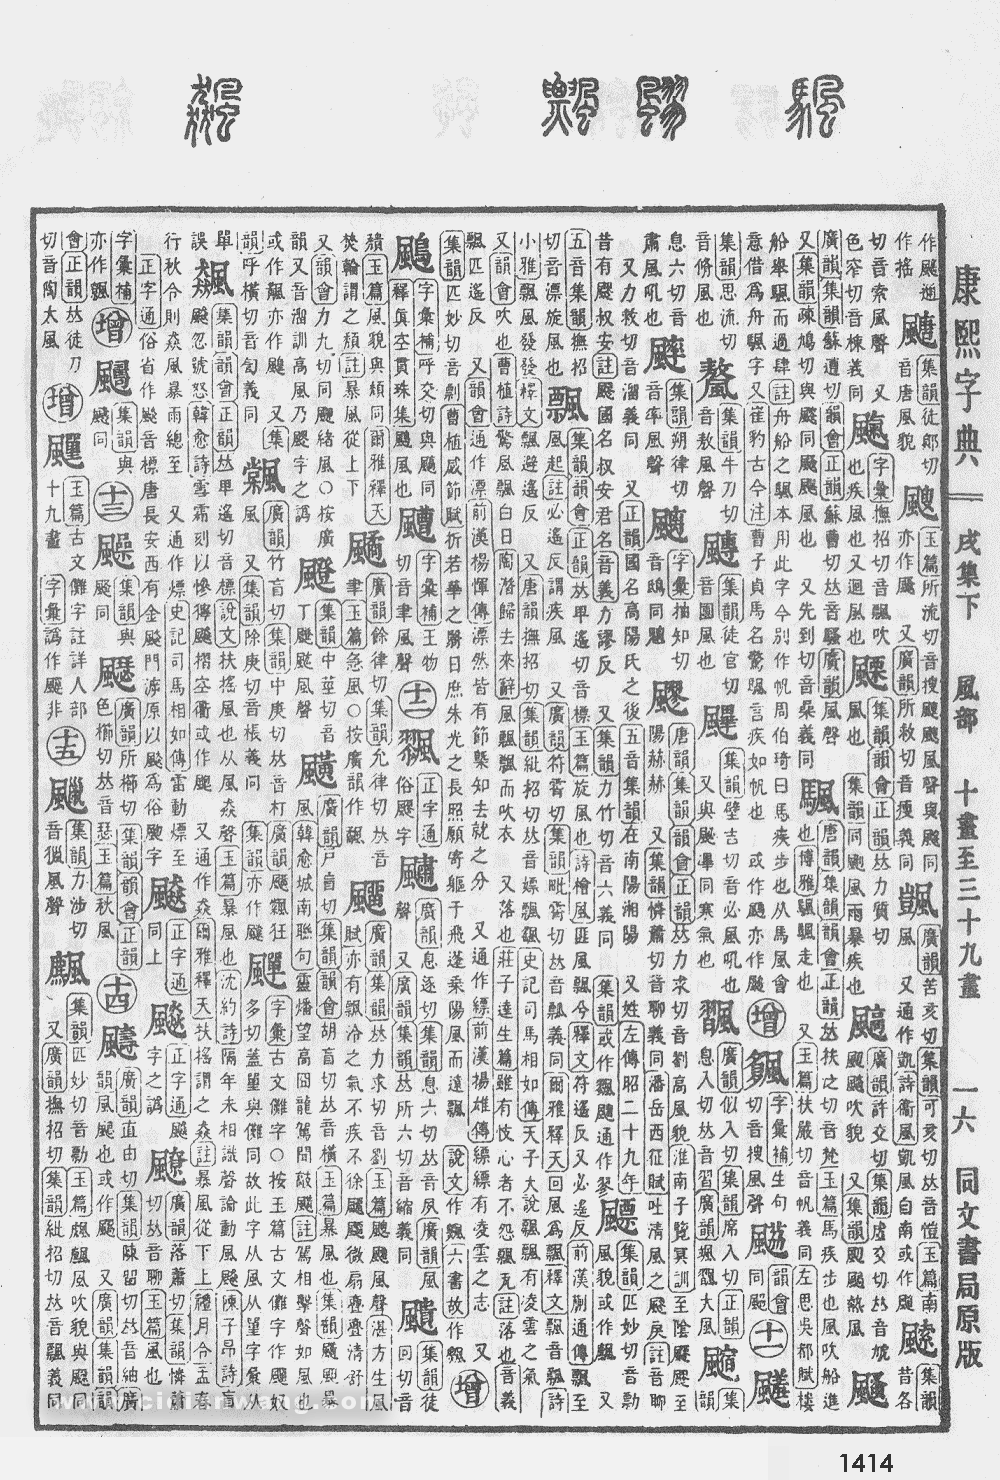 康熙字典掃描版第1414頁